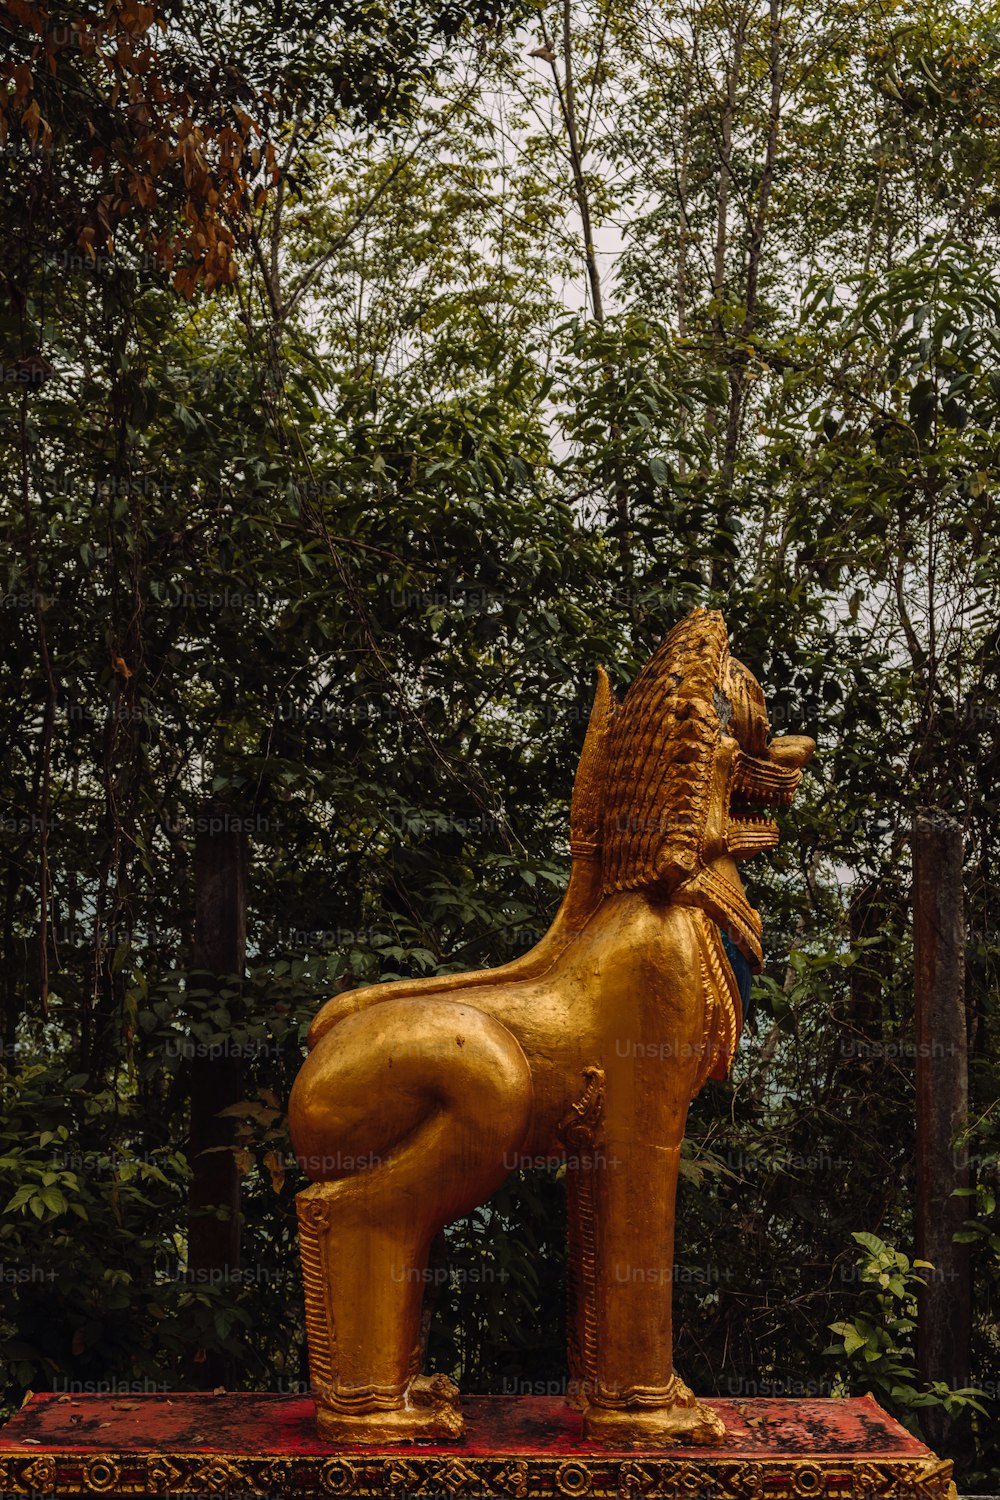 Una estatua de león dorado sentado encima de una caja roja